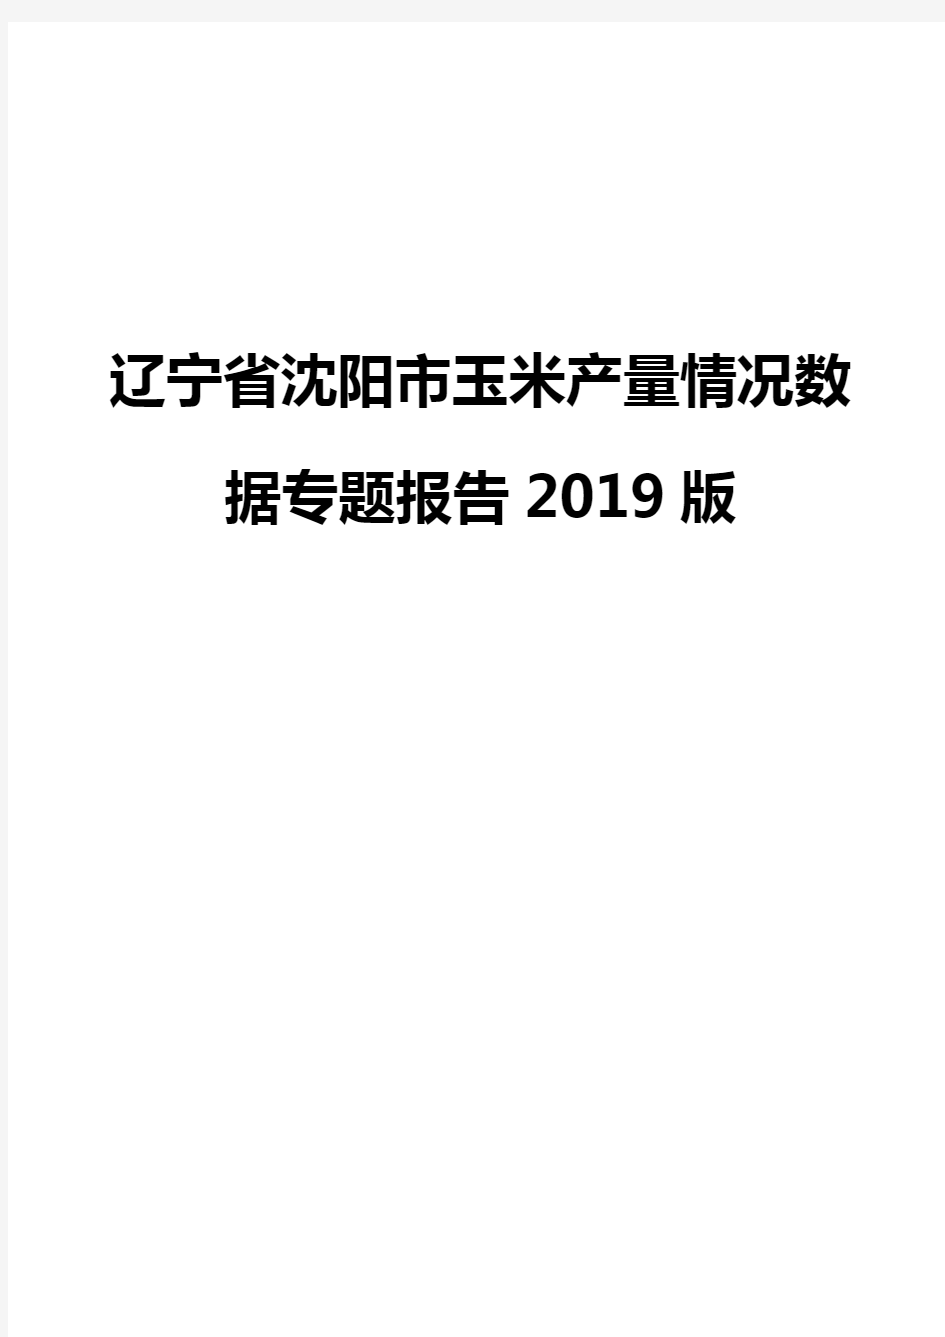 辽宁省沈阳市玉米产量情况数据专题报告2019版